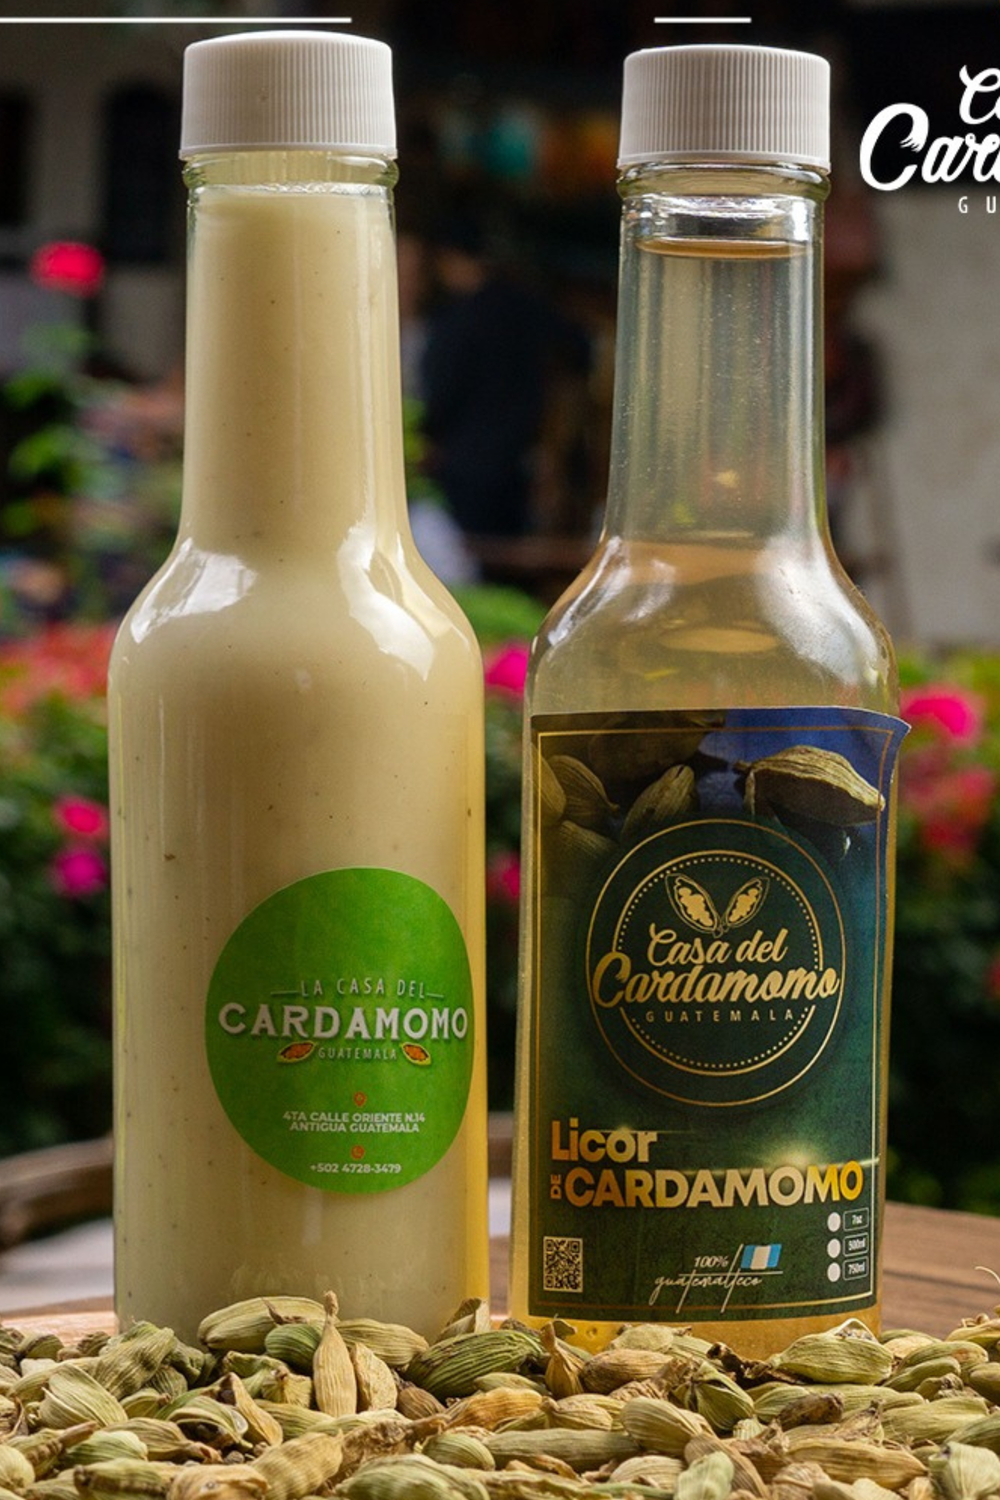 Cardamom Liquor